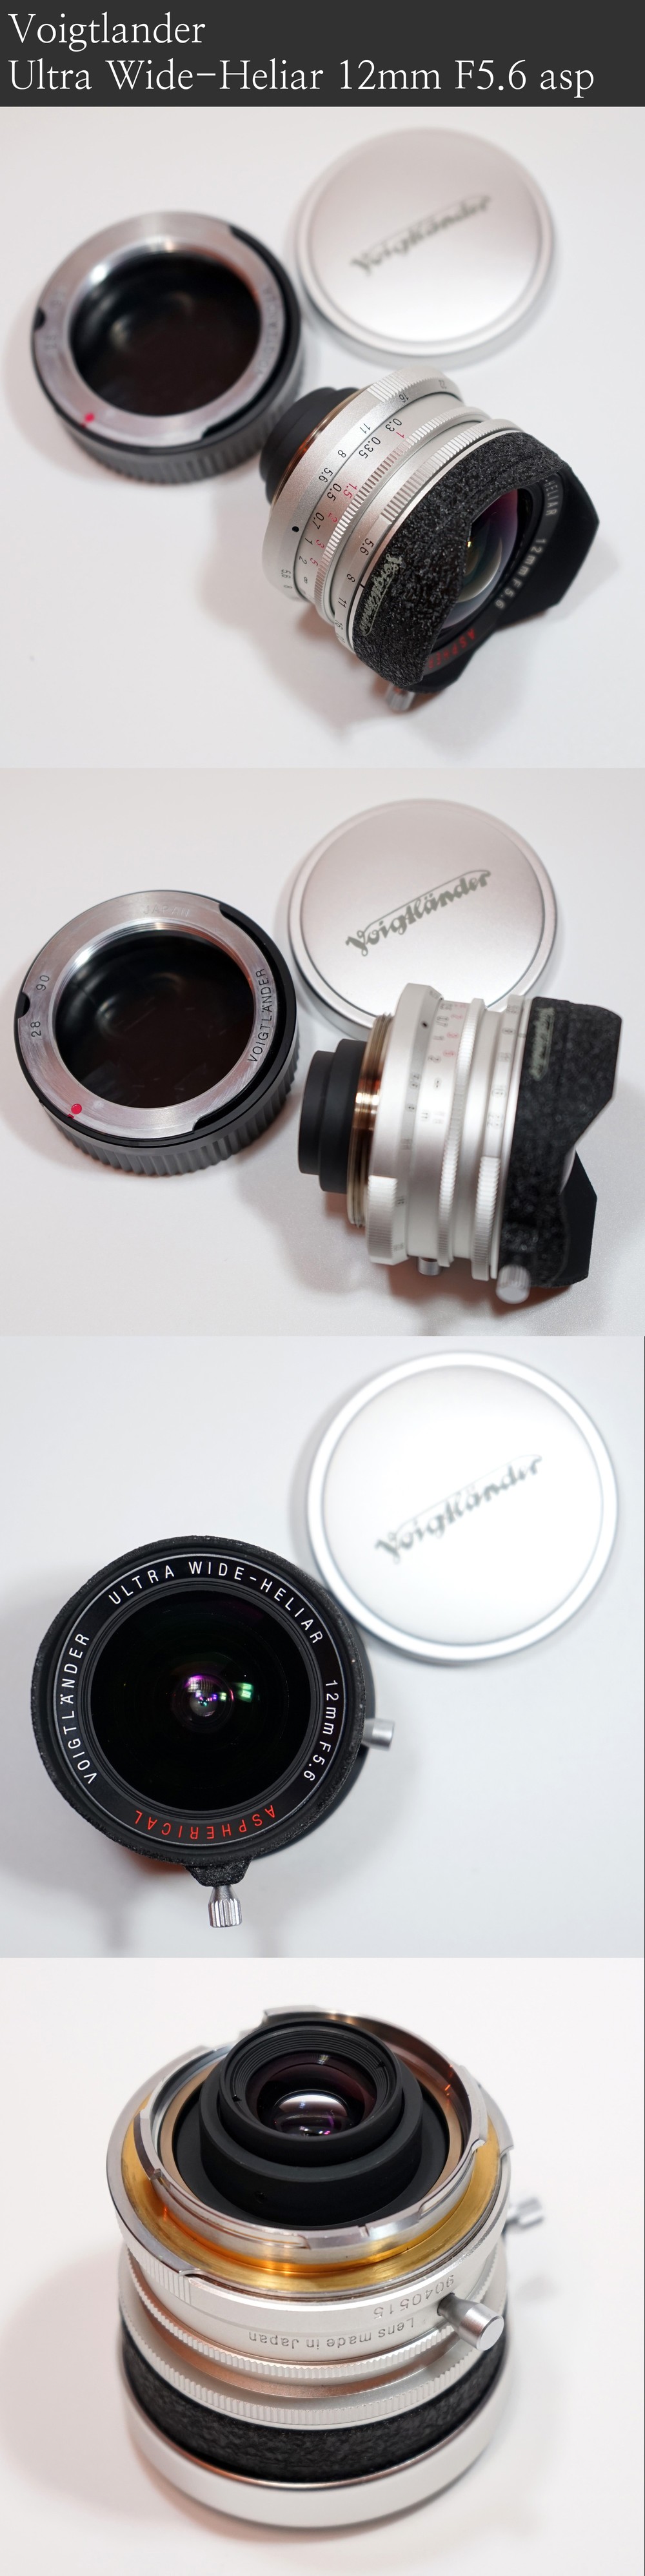 라이카(Leica) Elmar 35mm F3.5,베사(Bessa) R2,Voigtlander 12mm F5.6 Photo-Image